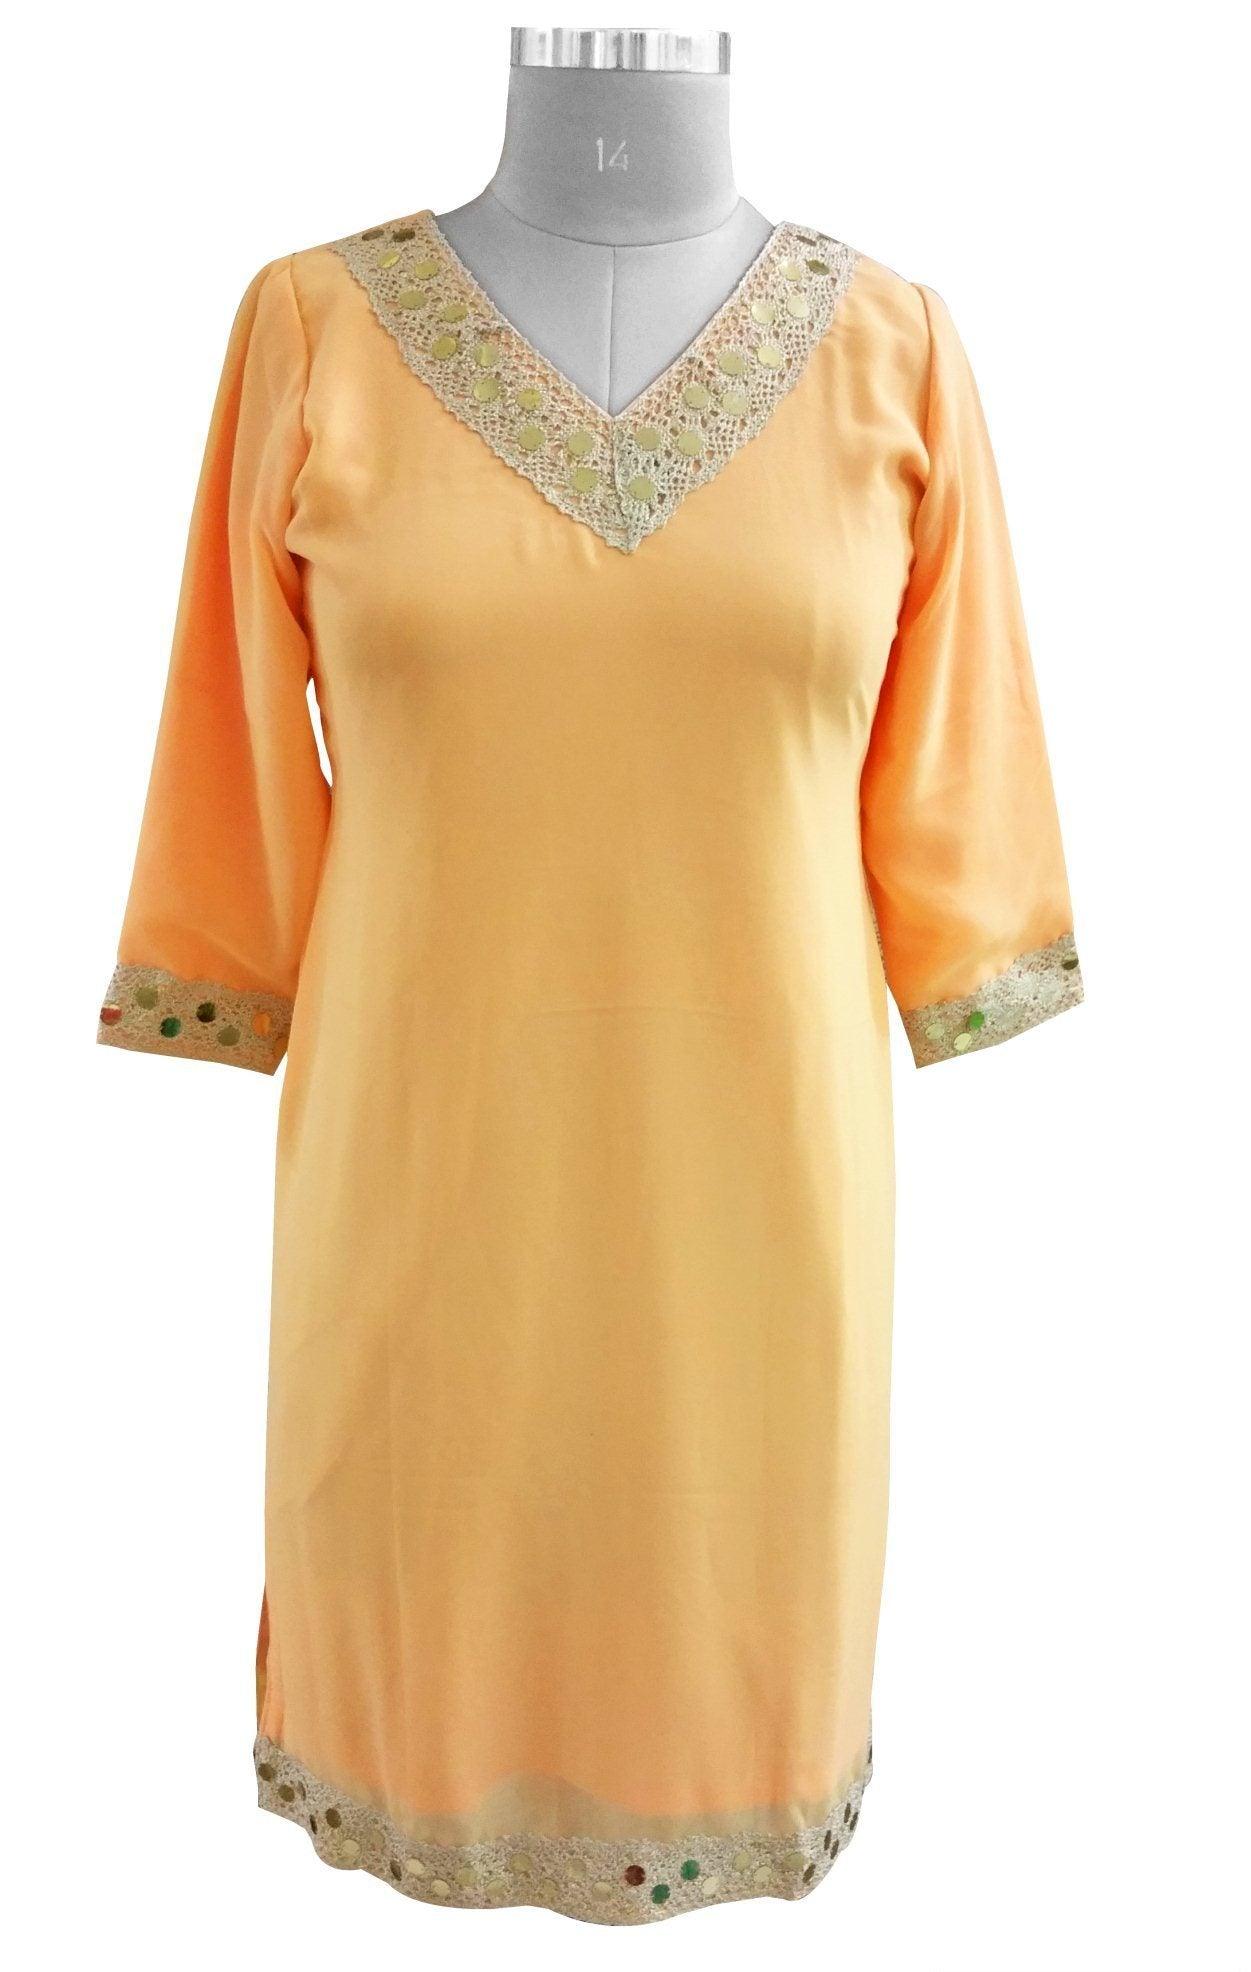 Peach Chiffon with lining Stitched Kurta Dress Size 42 SC812-Anvi Creations-Kurta,Kurti,Top,Tunic